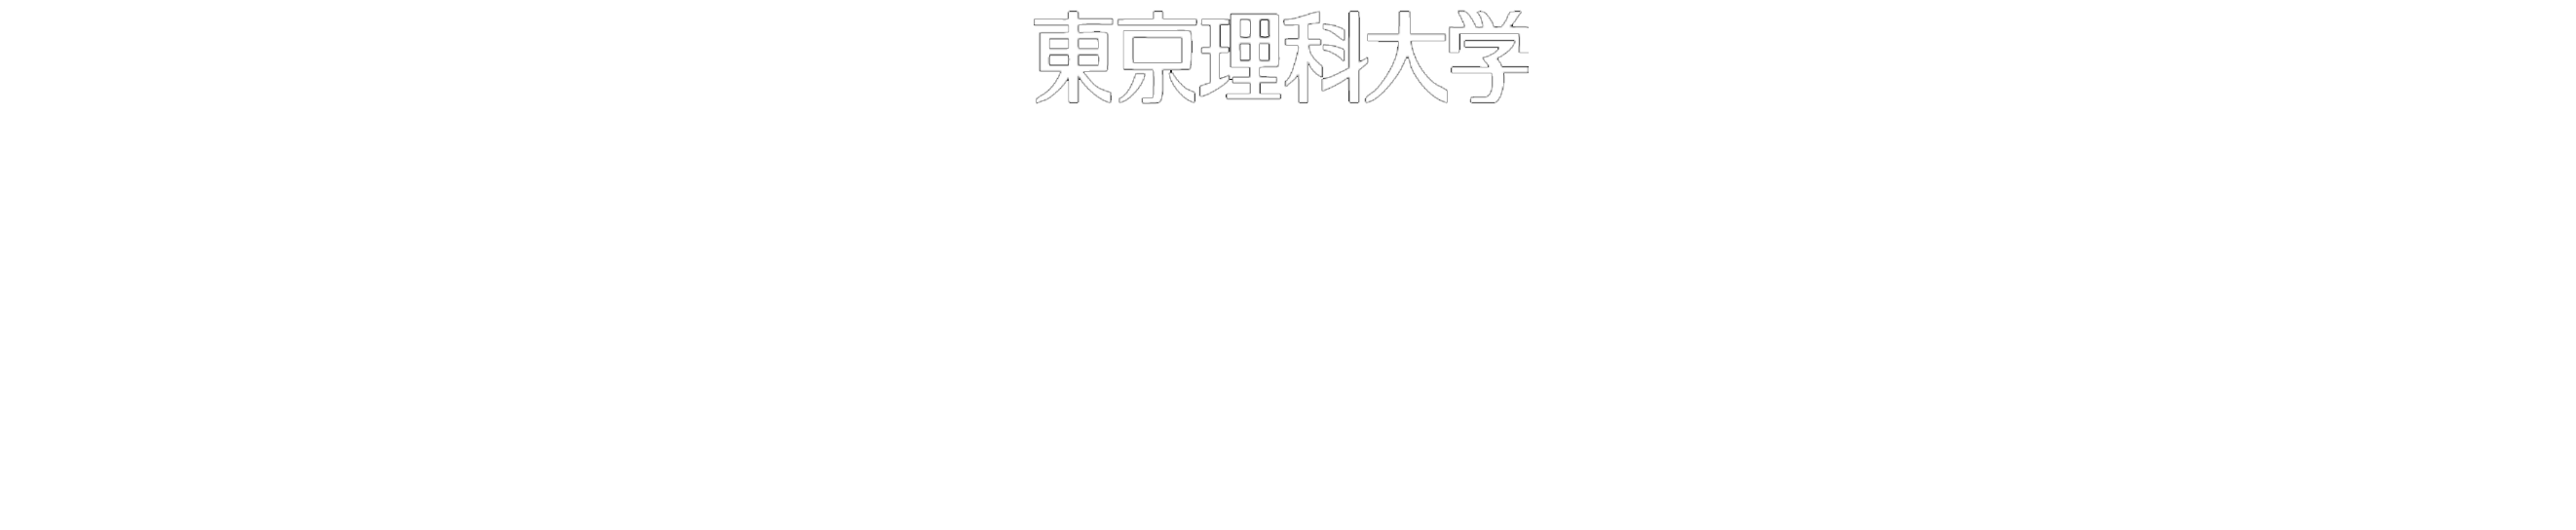 思い出キャンパス写真館 Tokyo University of Science Memory Campus